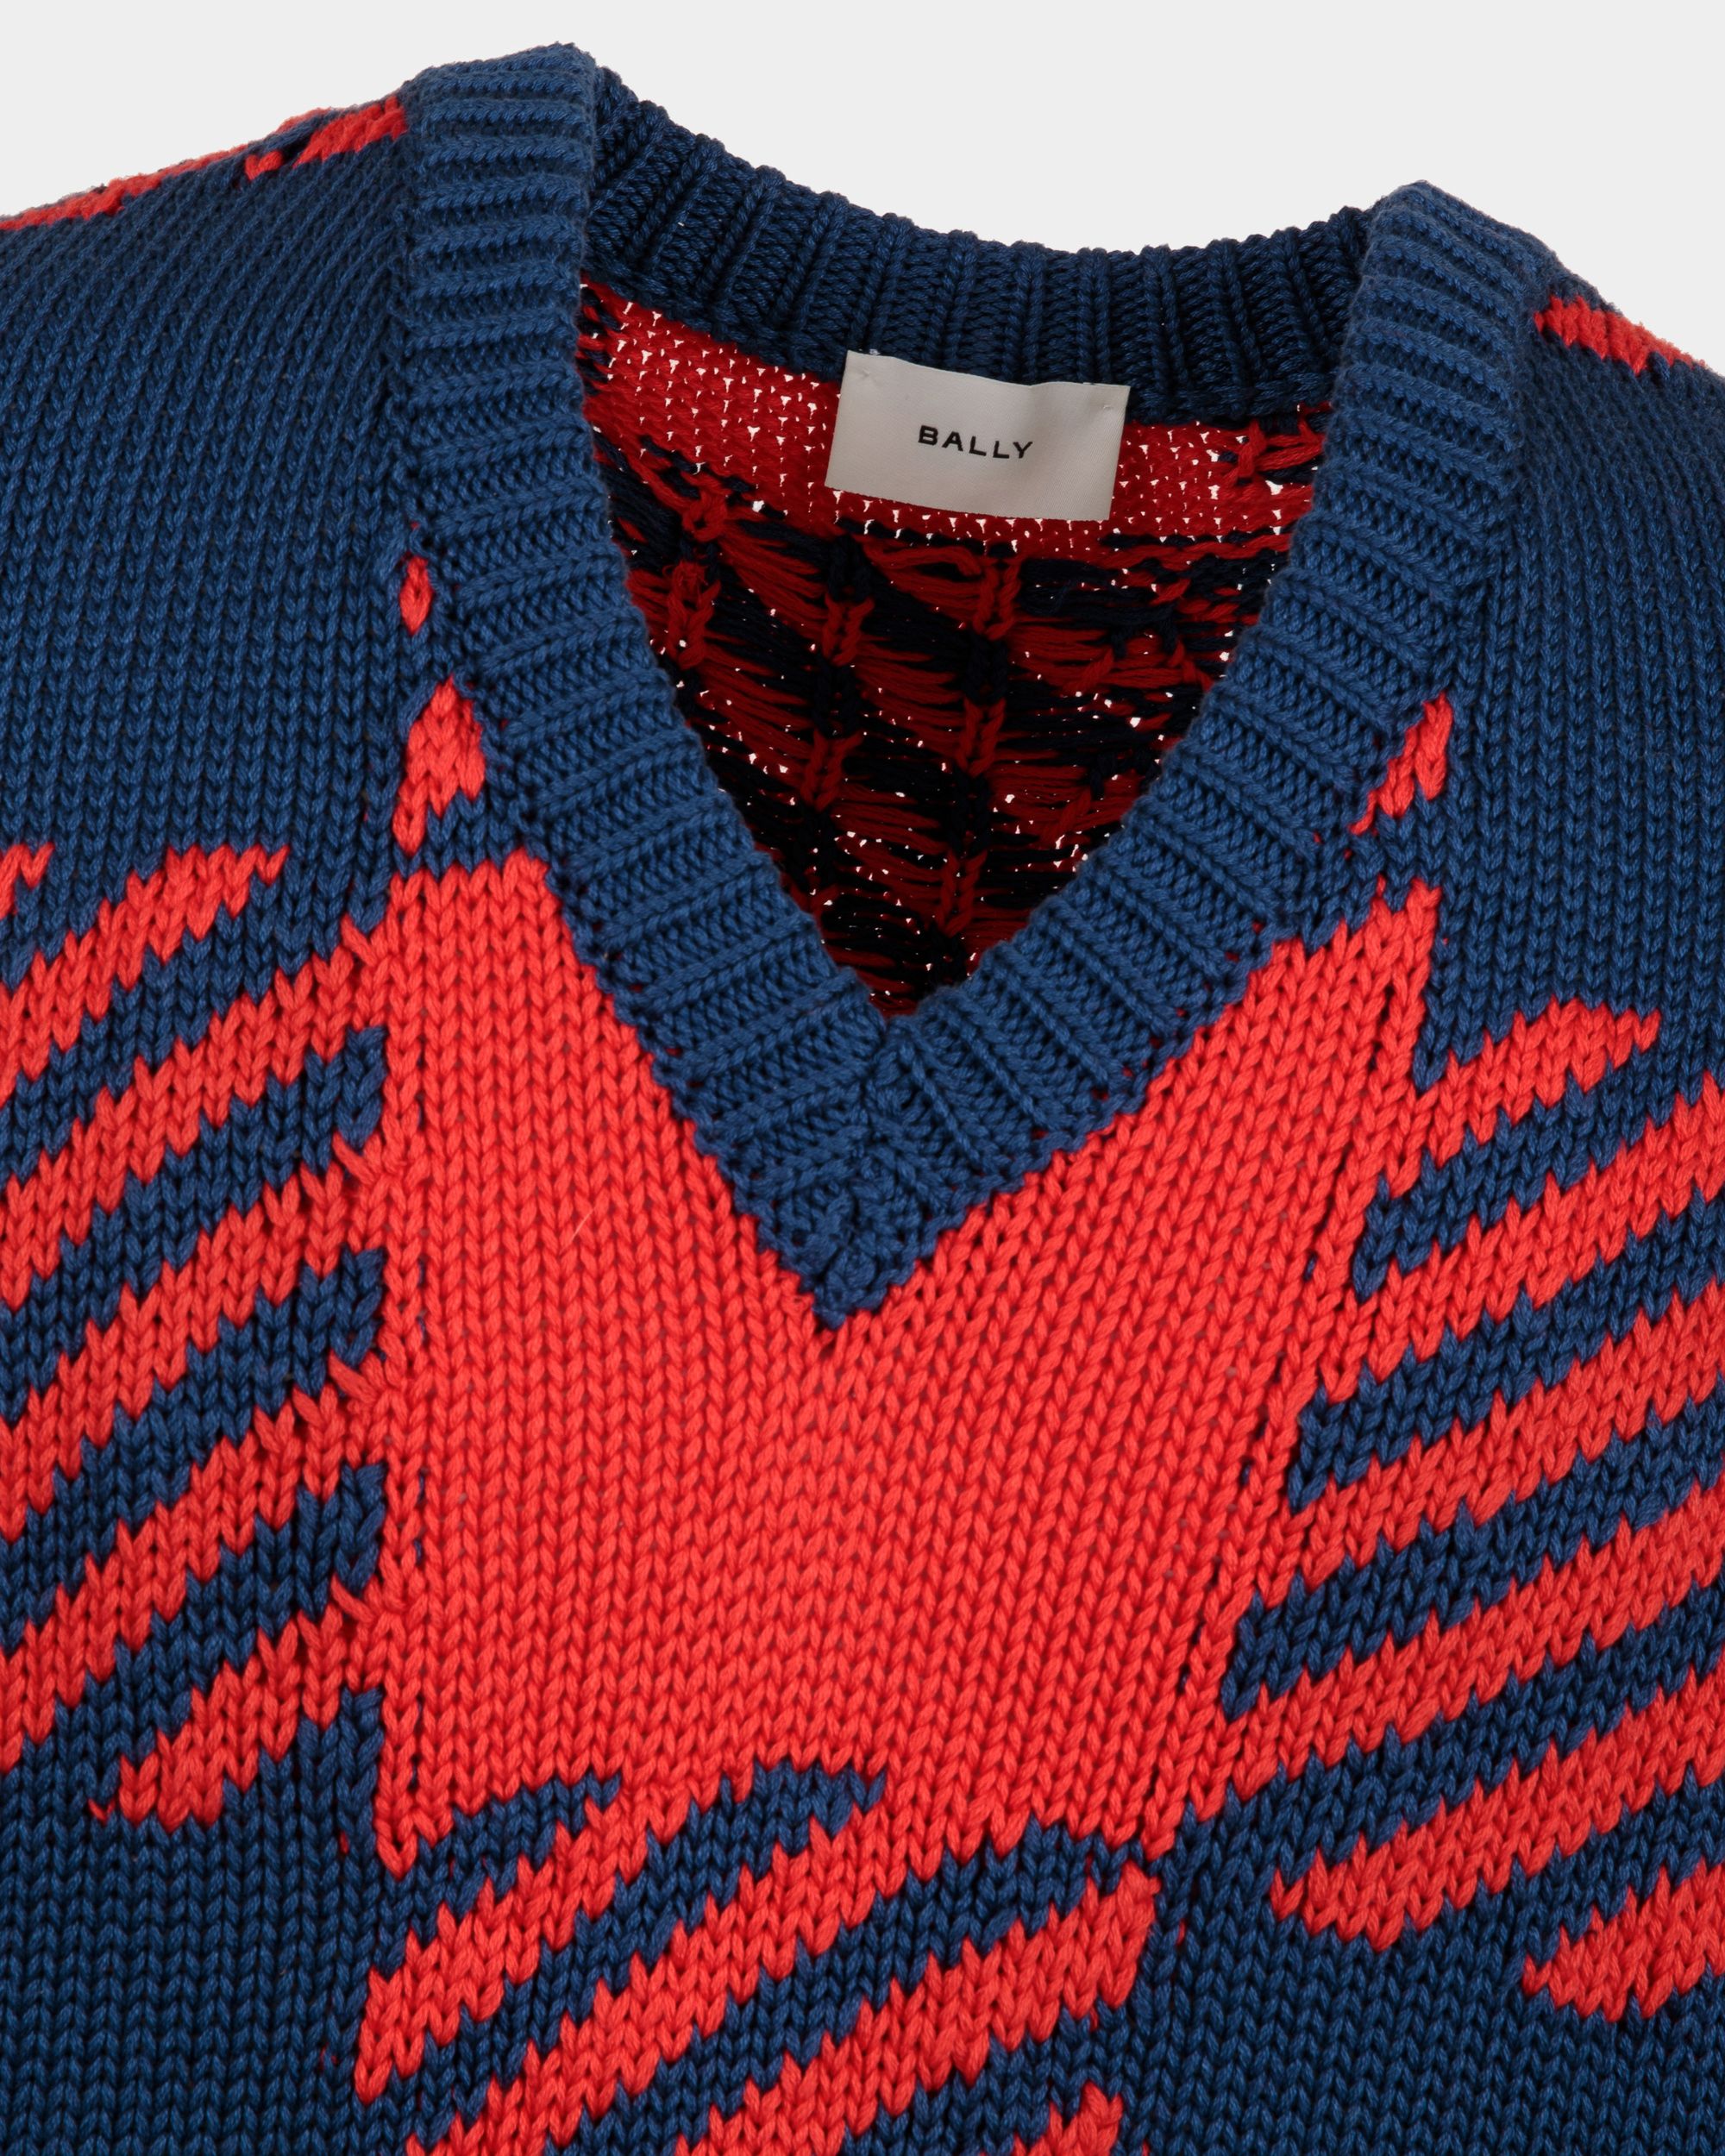 Pullover mit V-Ausschnitt für Herren aus Baumwolle in Rot und Blau | Bally | Model getragen Detail